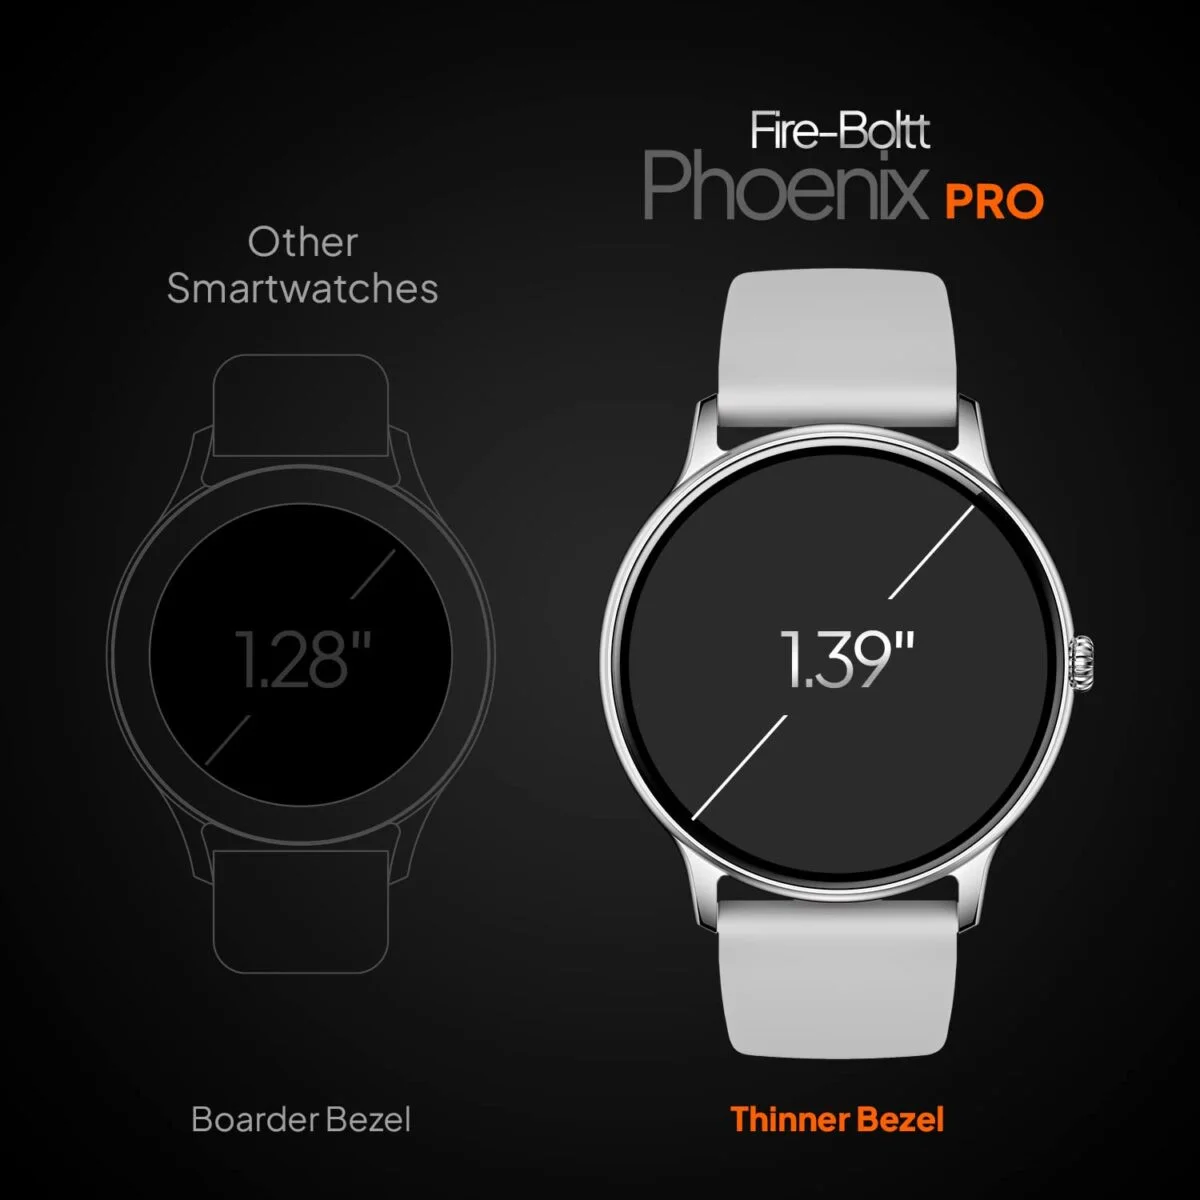 Fire boltt phoenix pro smart watch silver grey 10 fire-boltt phoenix pro smart watch